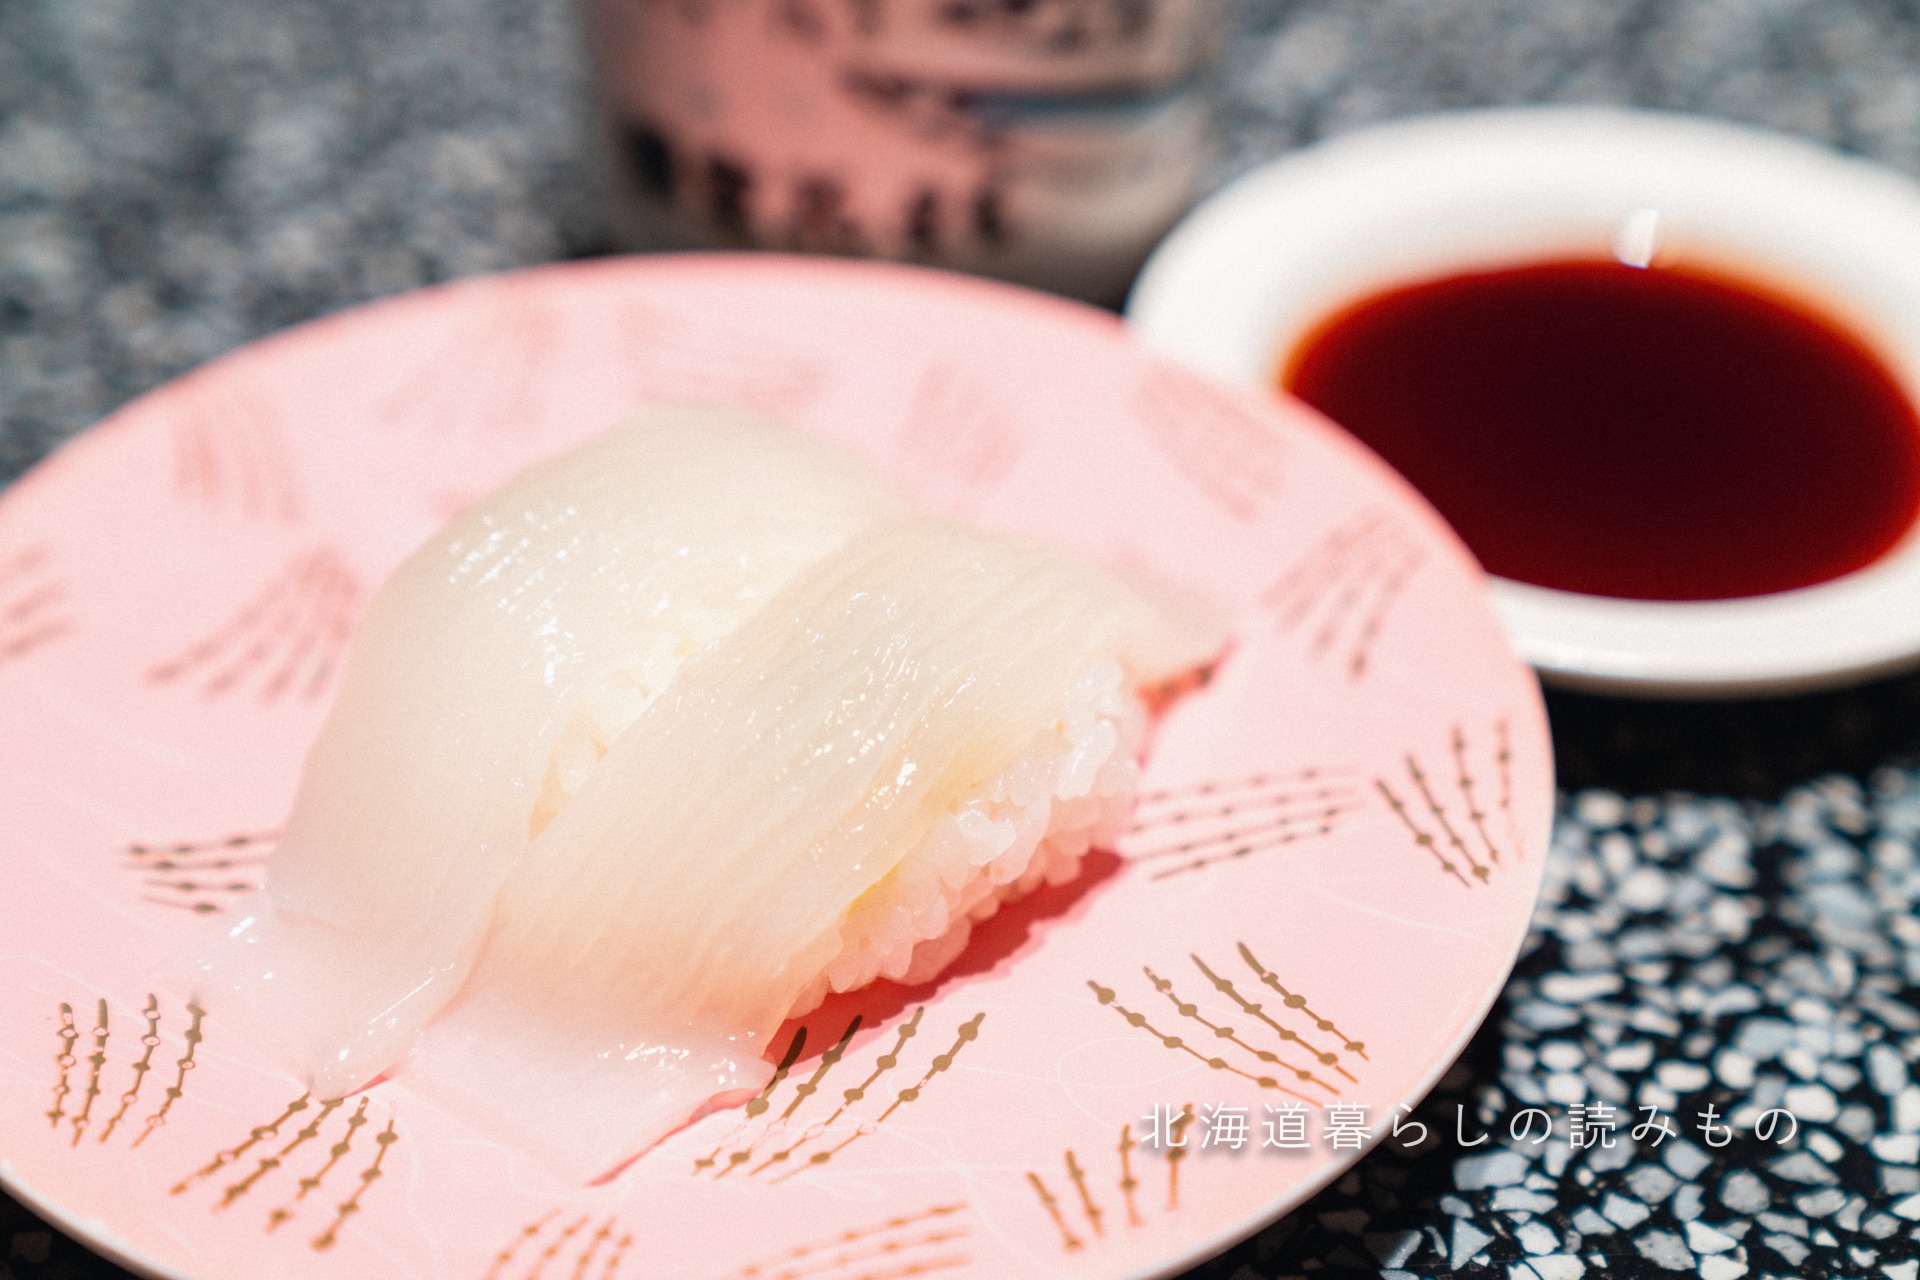 迴轉壽司根室花丸的菜單上的「墨魚」